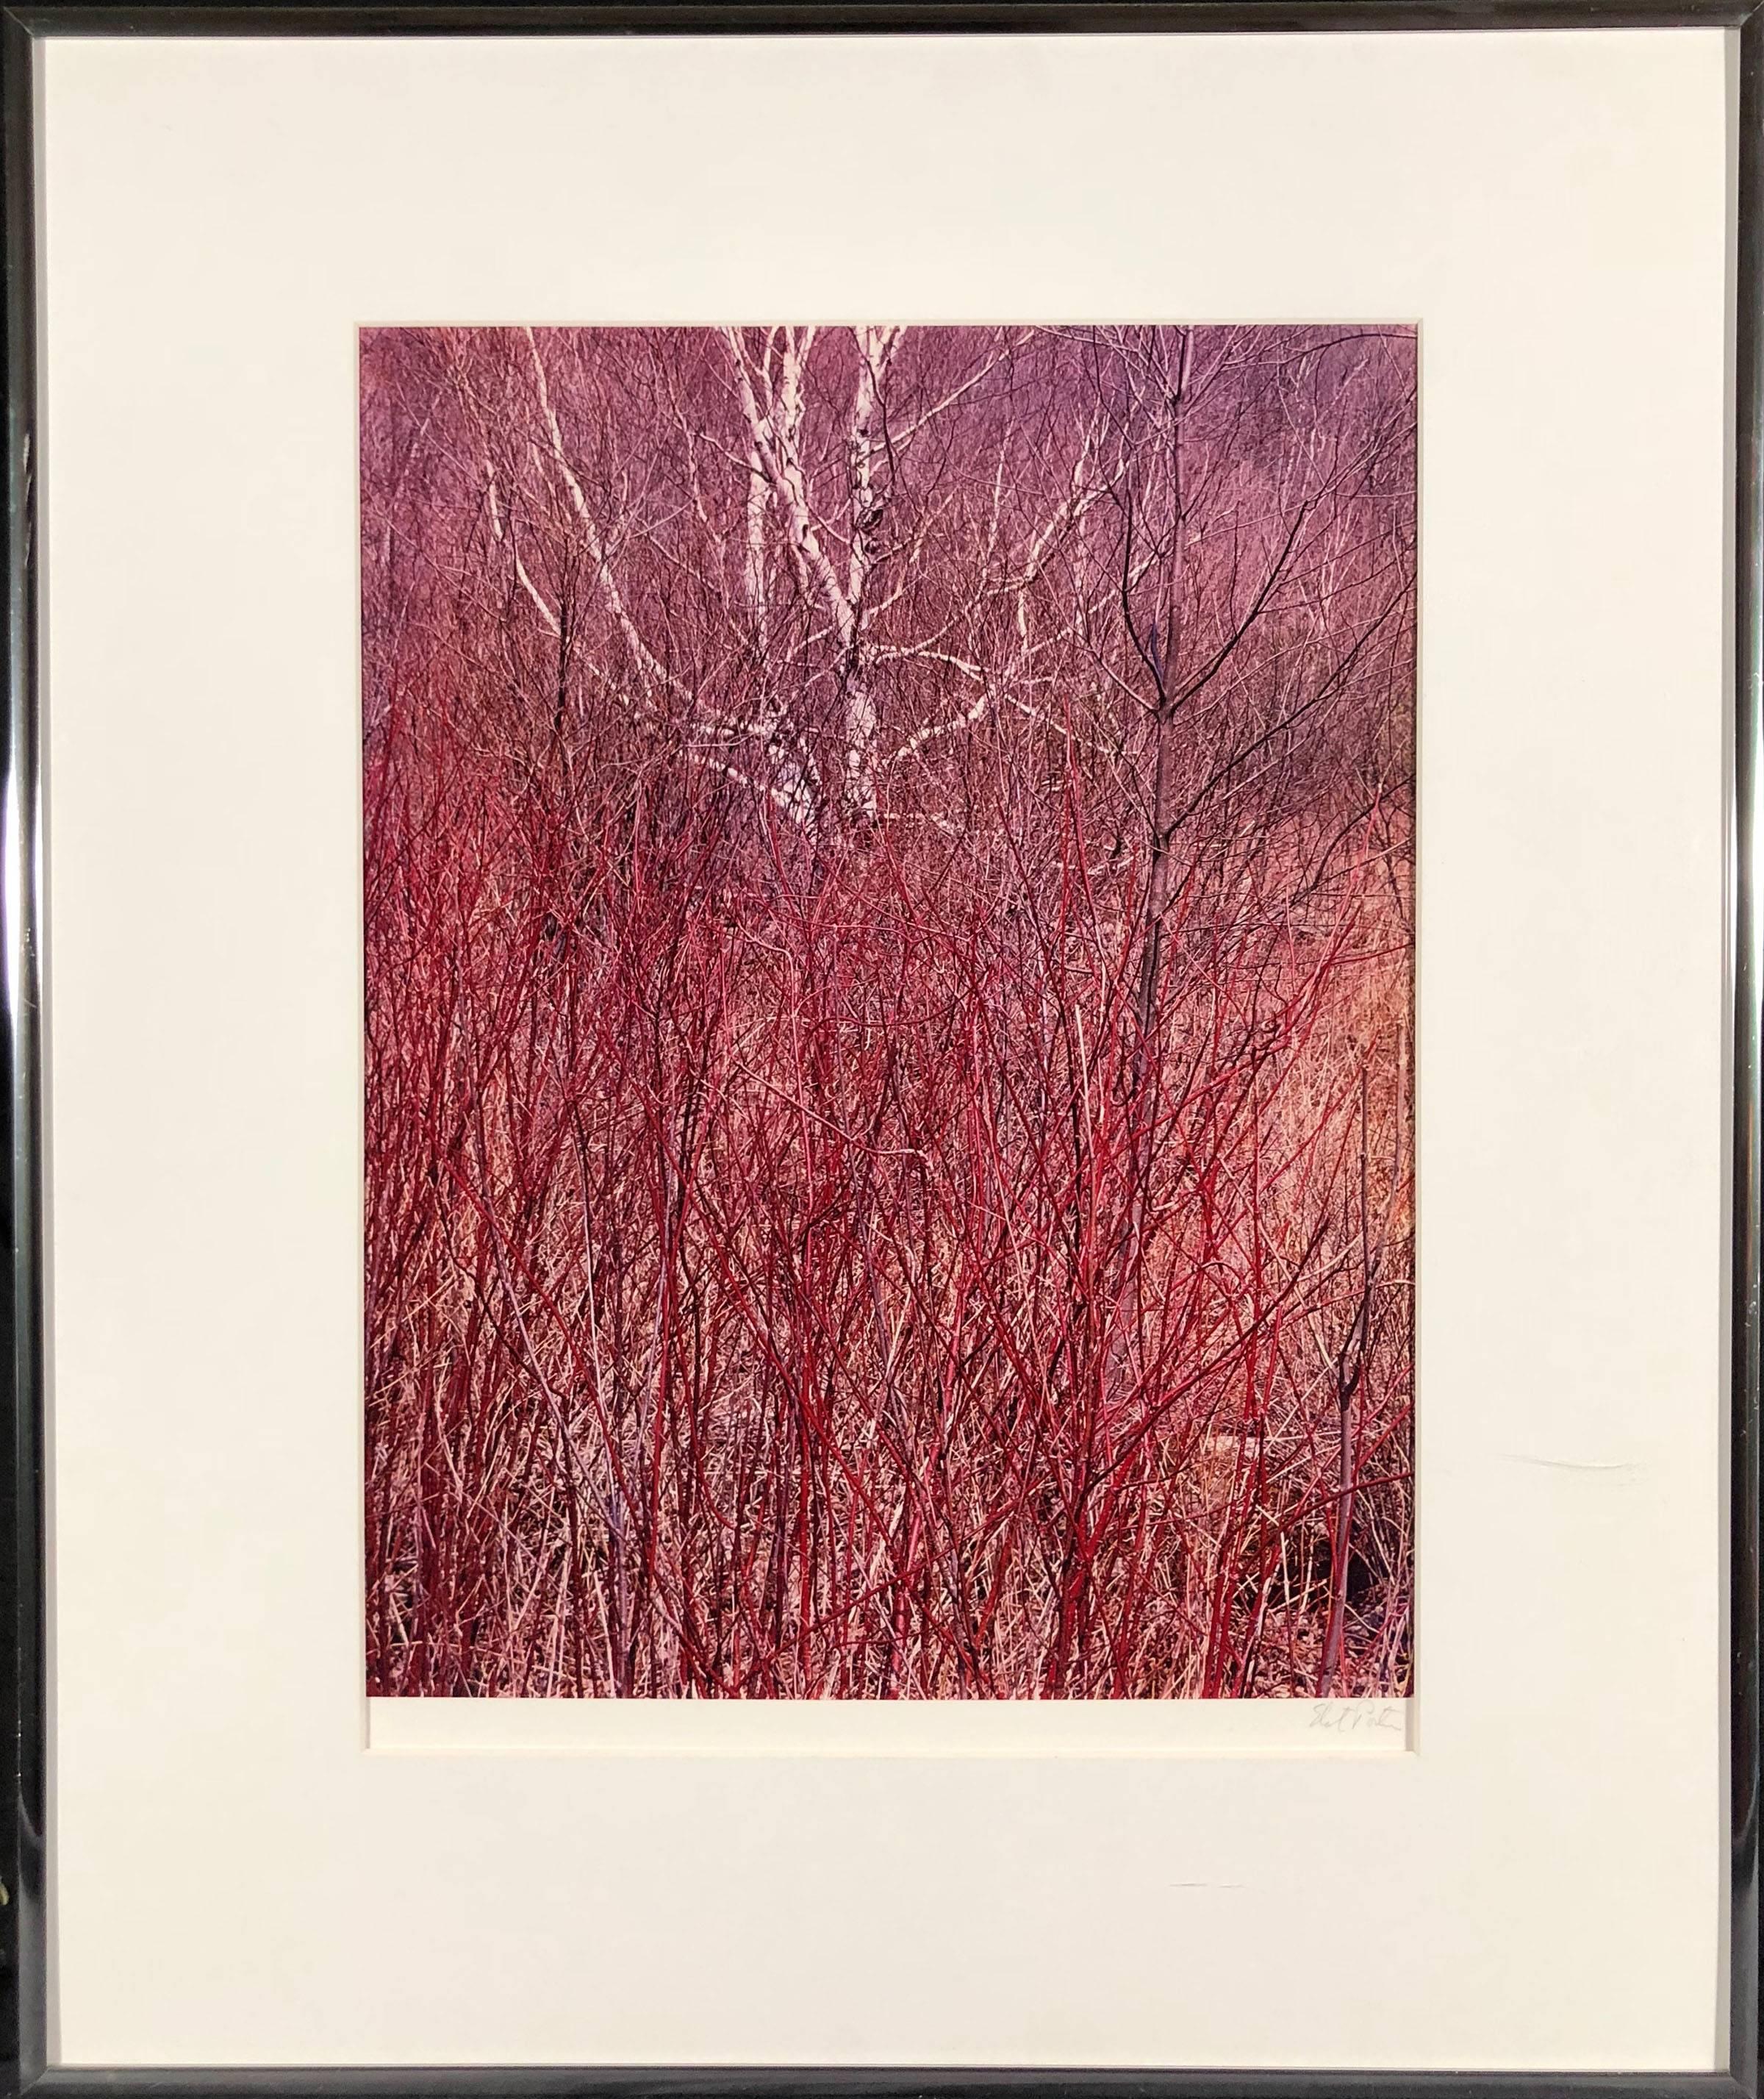 Red Osier, near Great Barrington, Massachusetts, April 18, 1957  - Photograph by Eliot Porter